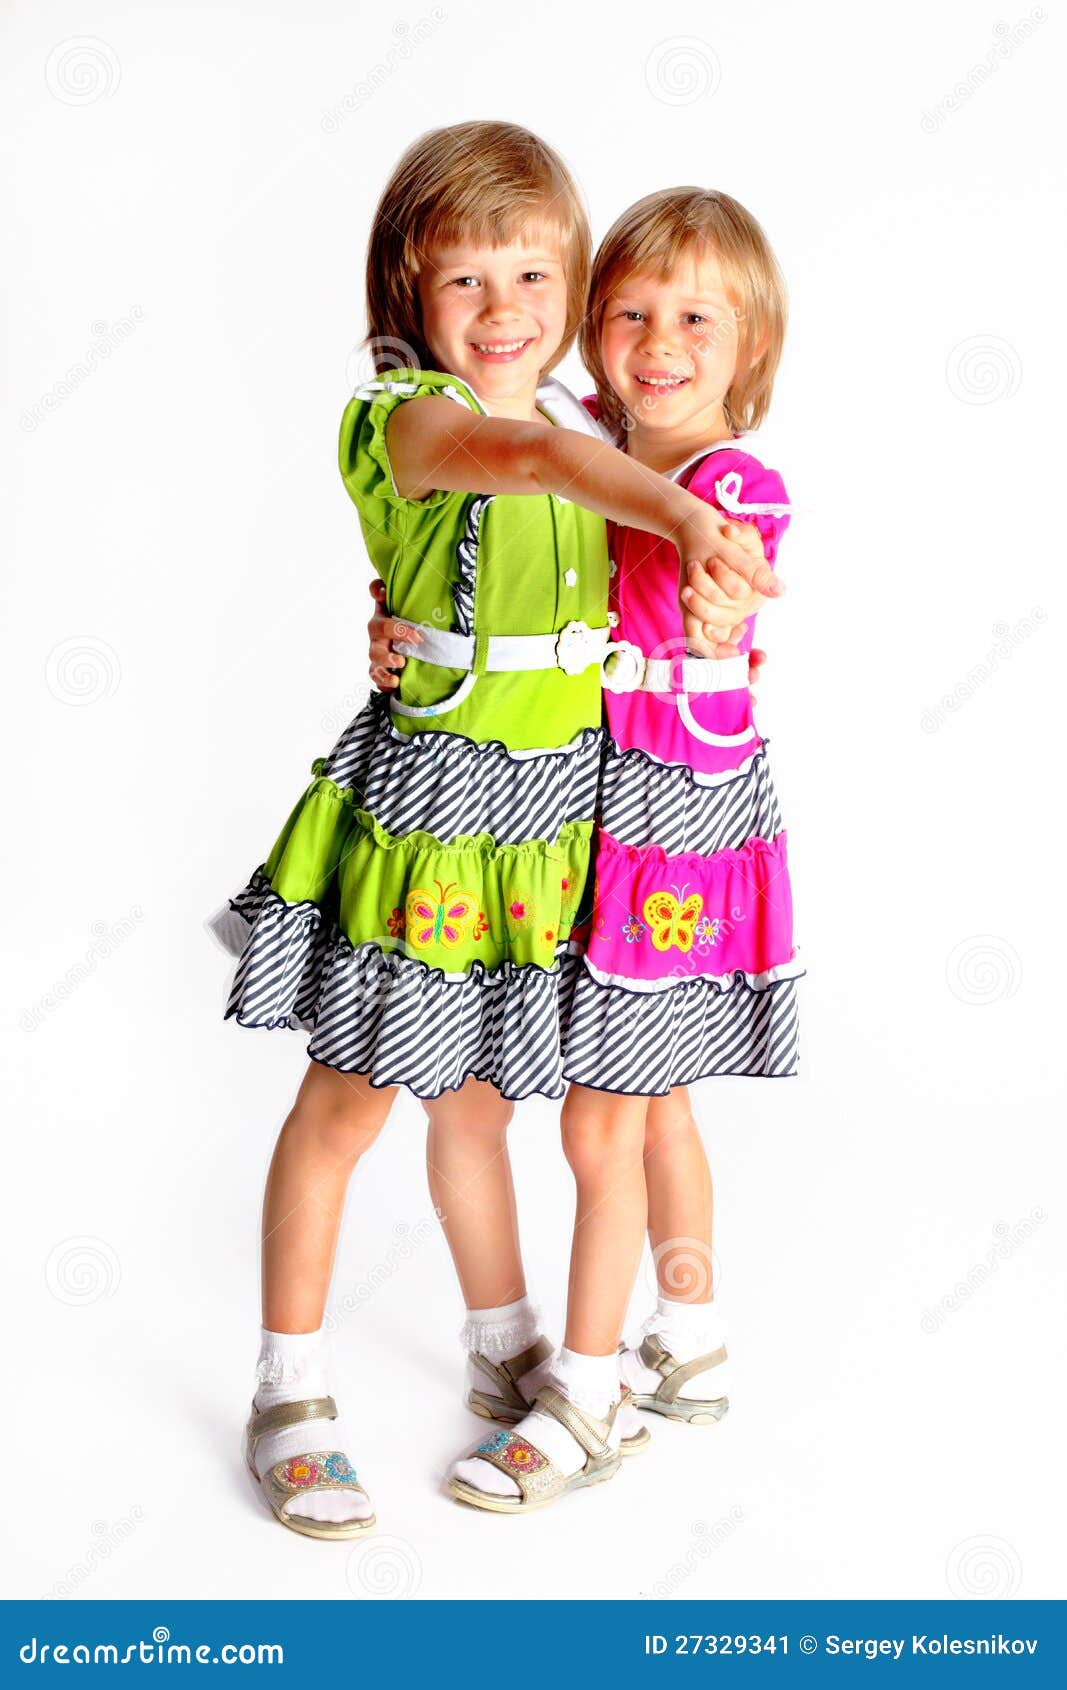 两个快乐的小微笑姐妹拥抱人像图片免费下载_jpg格式_2592像素_编号42797211-千图网